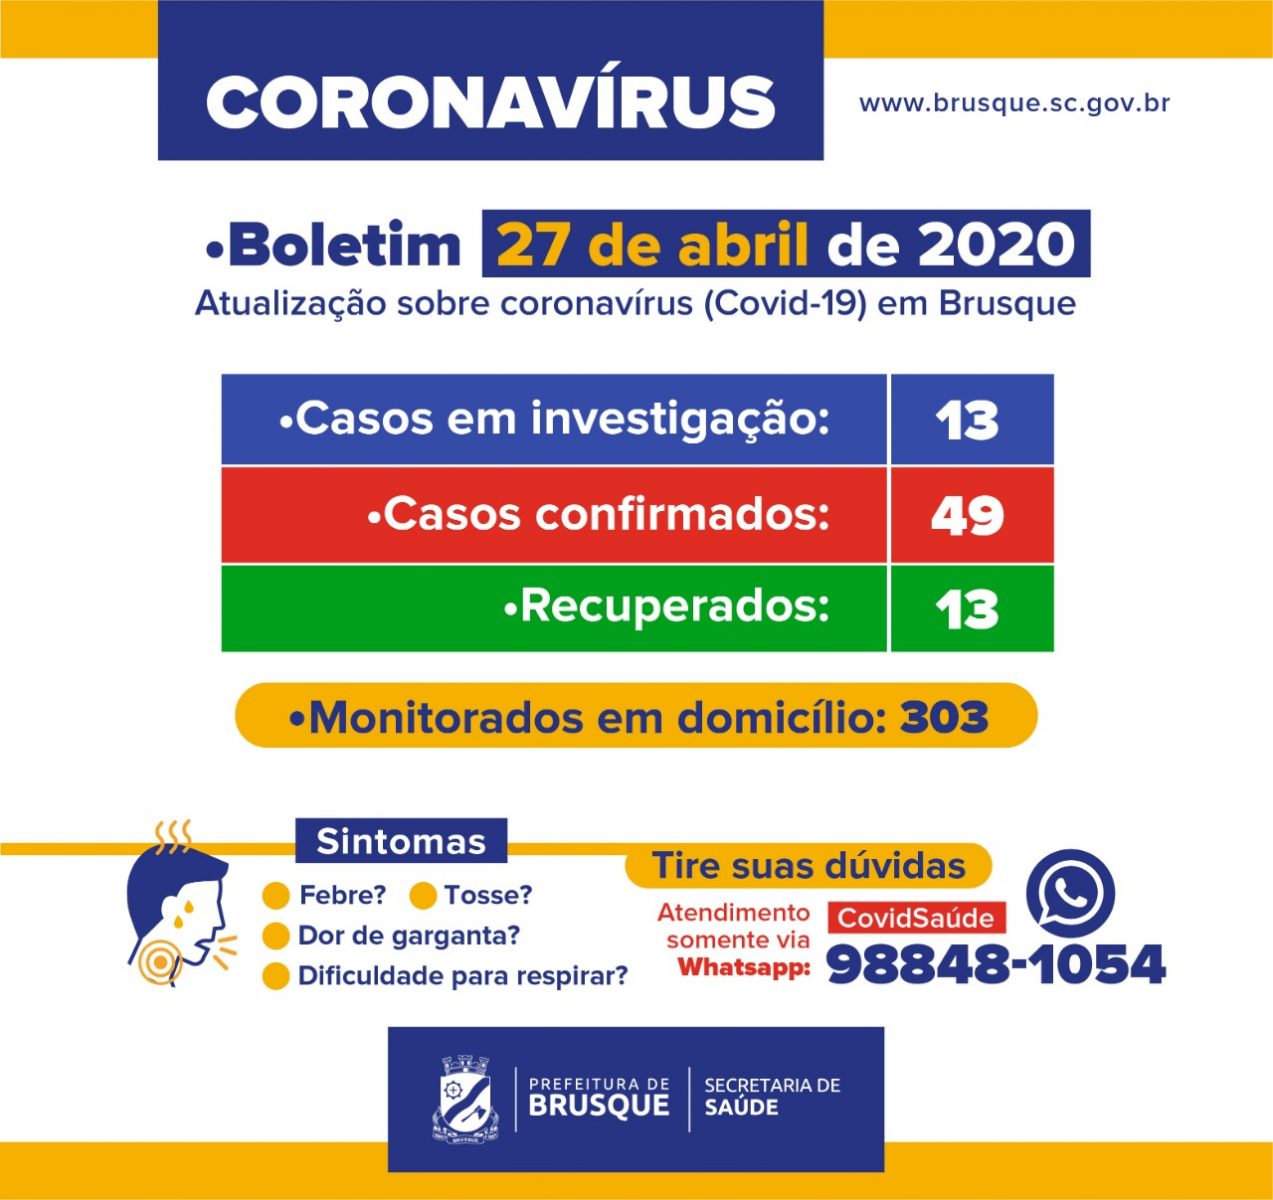 Brusque registra mais um caso de coronavirus. Números agora chegam a 49